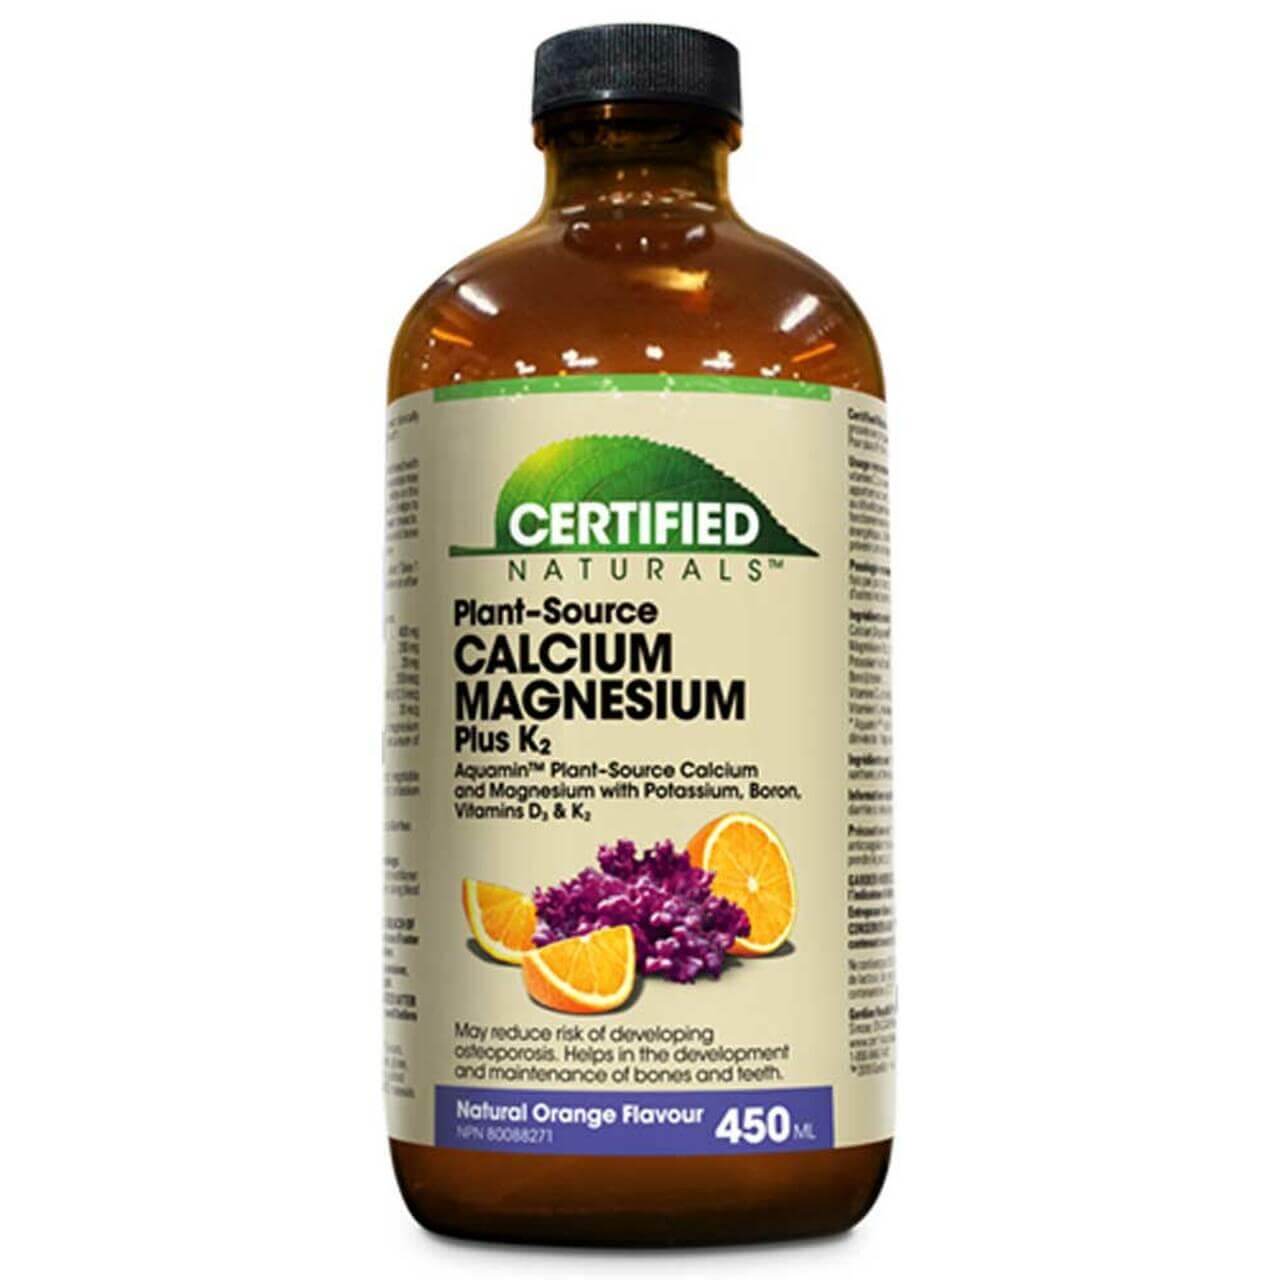 Certified Naturals™ Calcium Magnesium Plus K2 Liquid 450 ml with Aquamin | Nutrition Plus